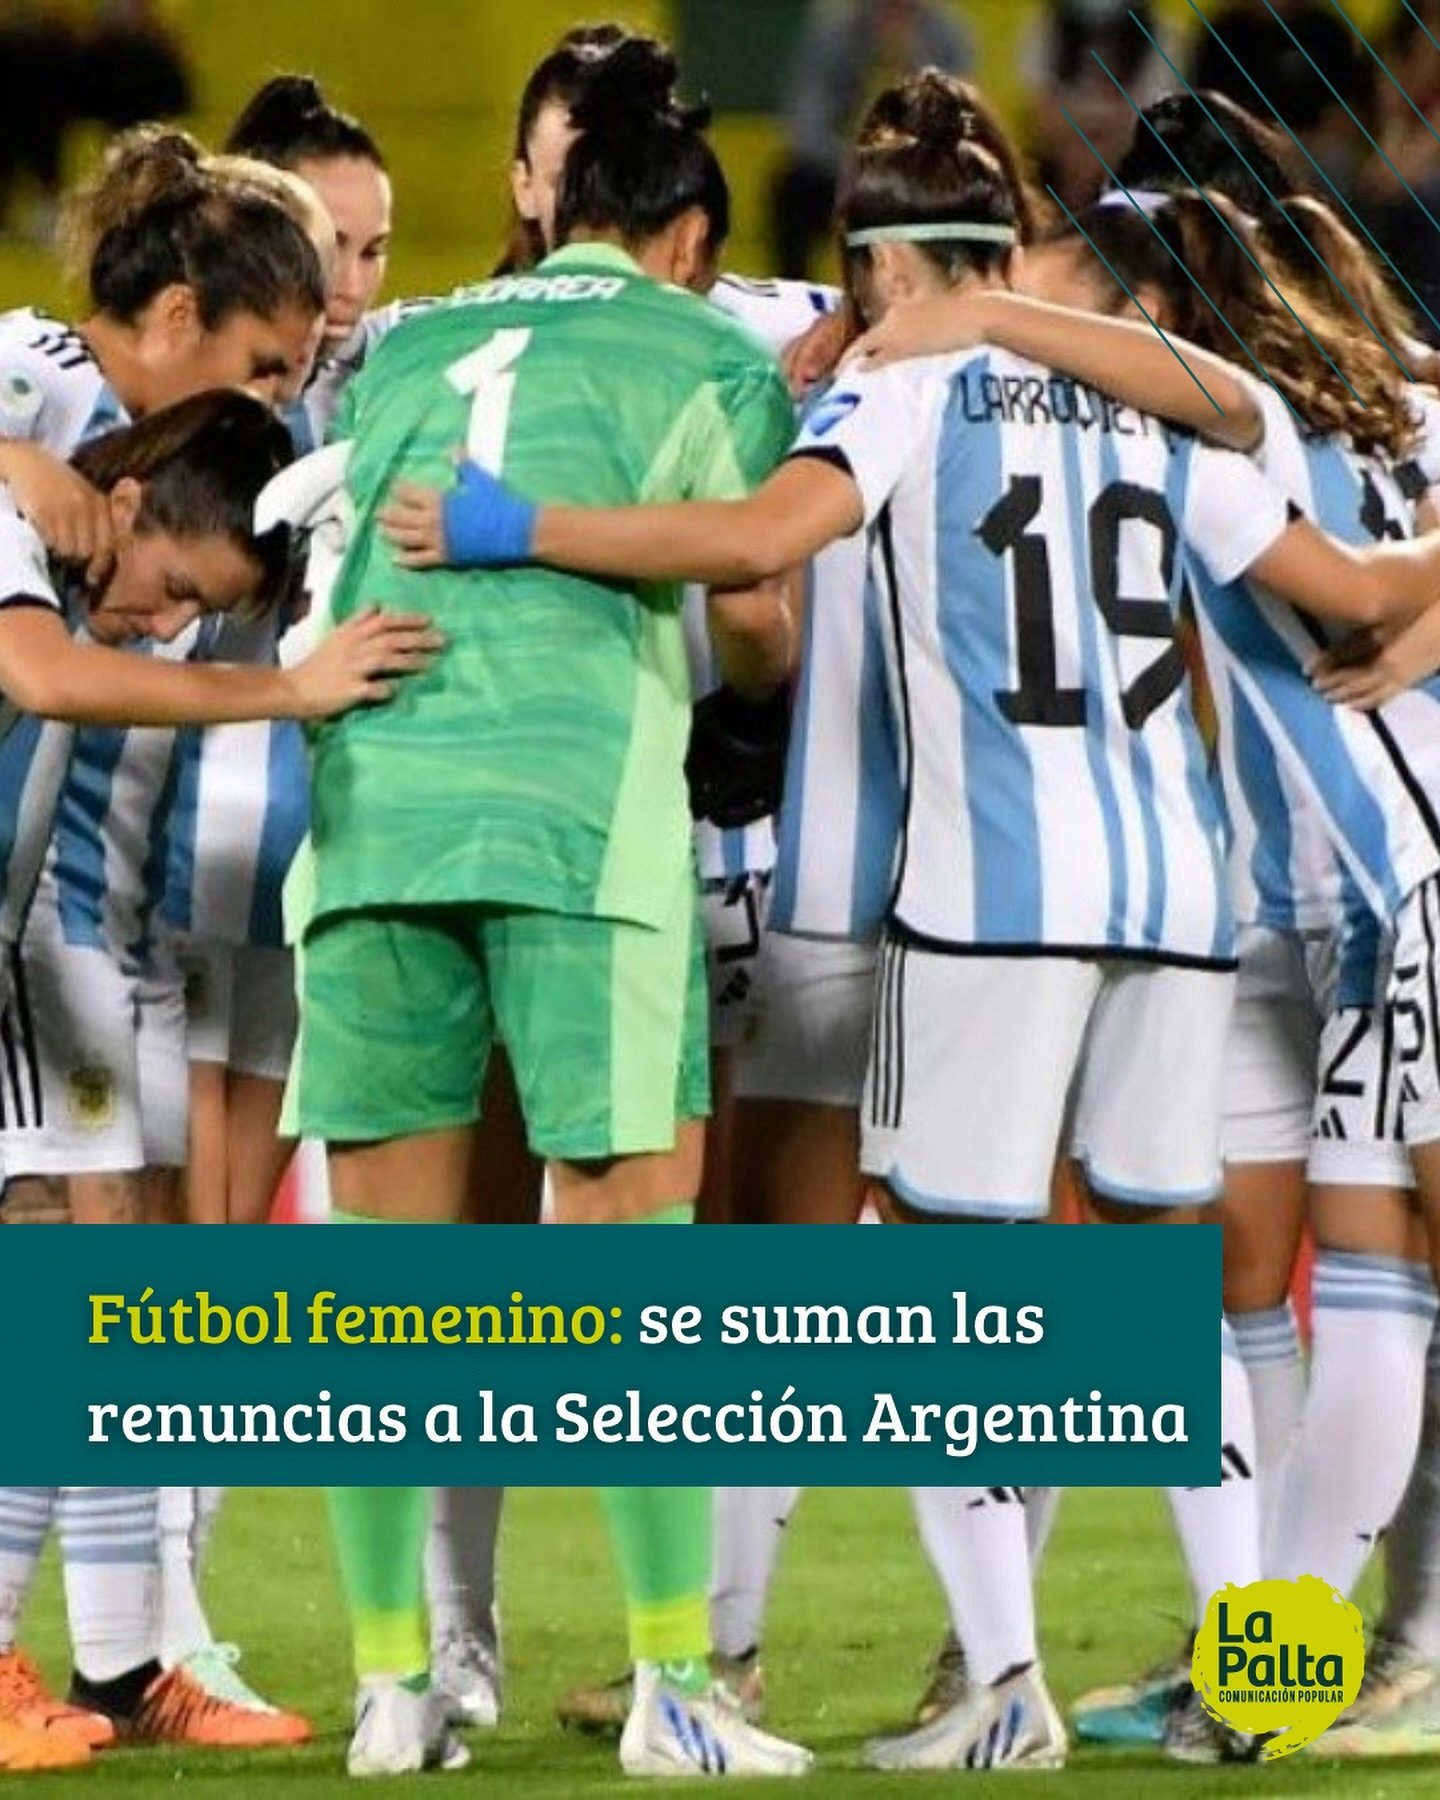 ❌ Varias jugadoras profesionales renunciaron a las convocatorias de la Selecci&oacute;n Argentina en protesta por la falta de apoyo de la AFA al f&uacute;tbol femenino.

➡️ Las jugadoras mencionaron la falta de alimentaci&oacute;n adecuada, problemas